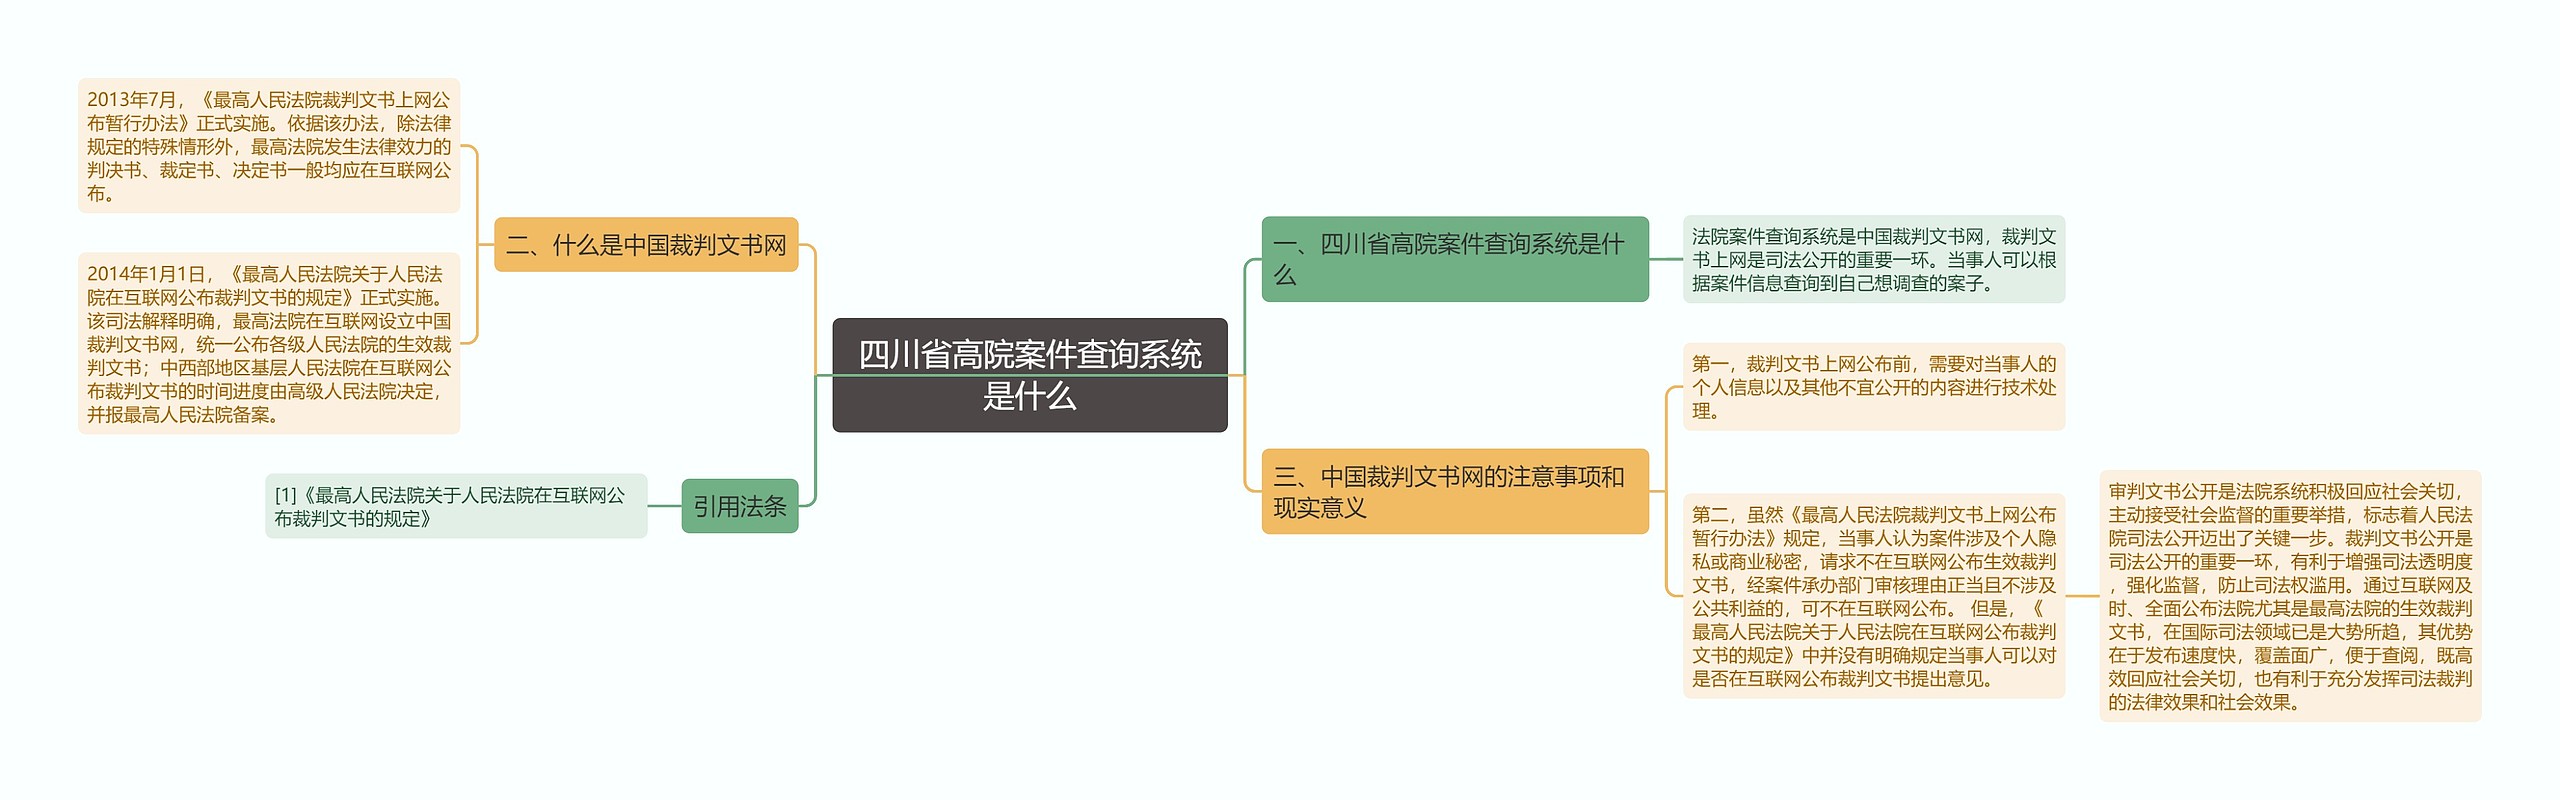 四川省高院案件查询系统是什么